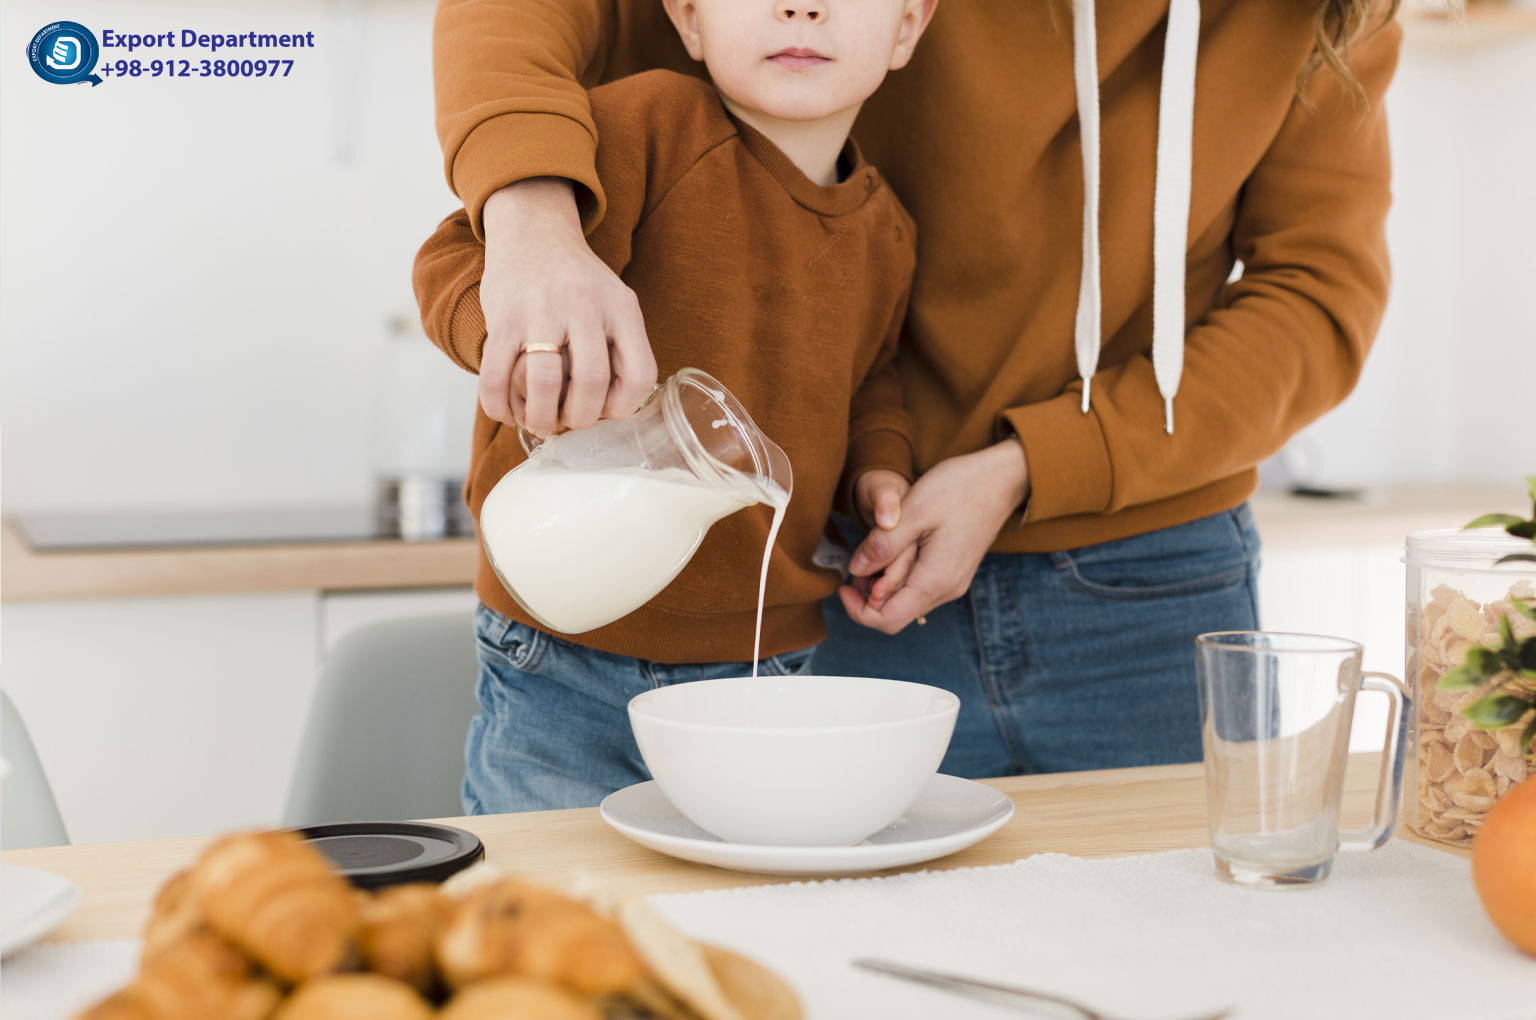 پودر شیر کامل: محصول لبنی مغذی و همه کاره